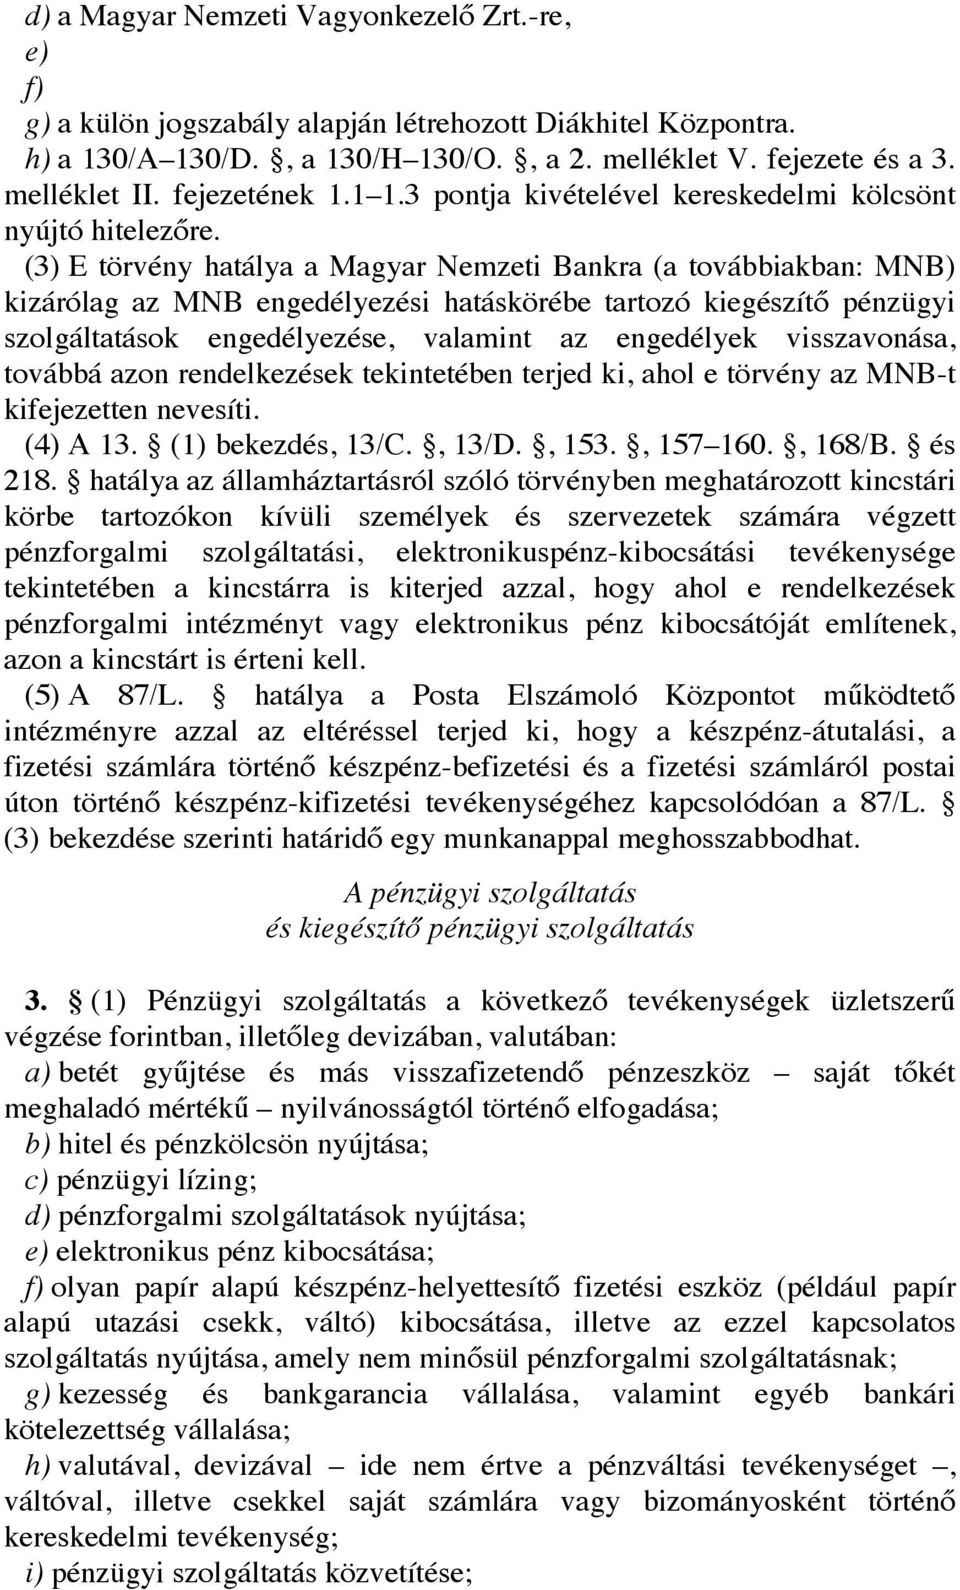 (3) E törvény hatálya a Magyar Nemzeti Bankra (a továbbiakban: MNB) kizárólag az MNB engedélyezési hatáskörébe tartozó kiegészítő pénzügyi szolgáltatások engedélyezése, valamint az engedélyek